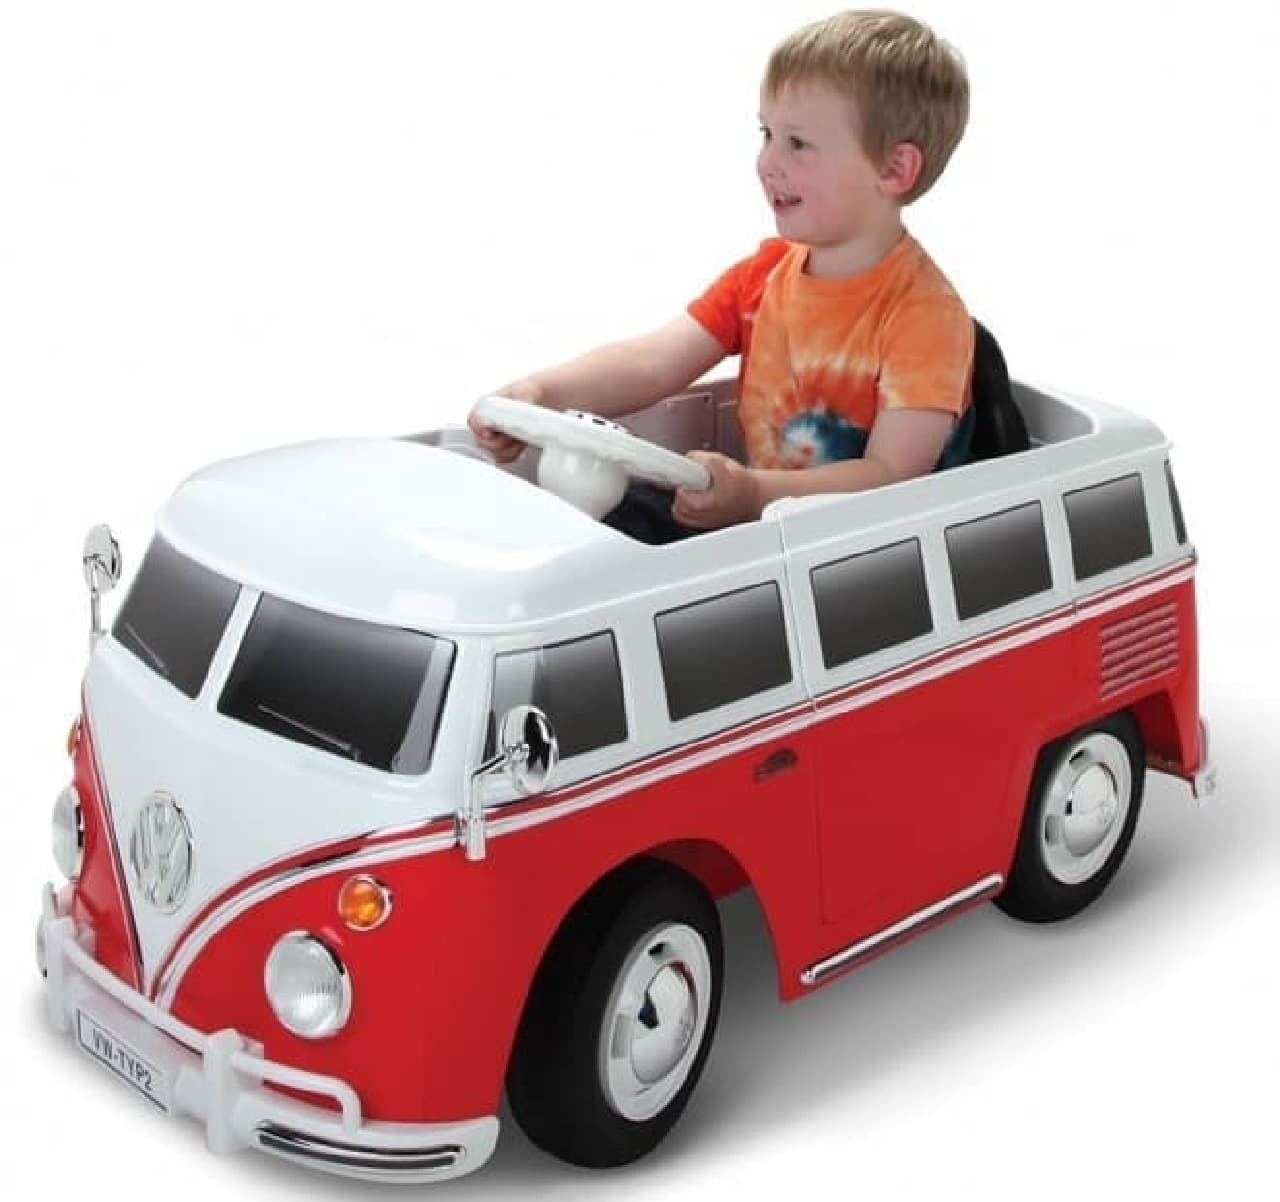 一人乗りの子ども用自動車「Volkswagen Bus」